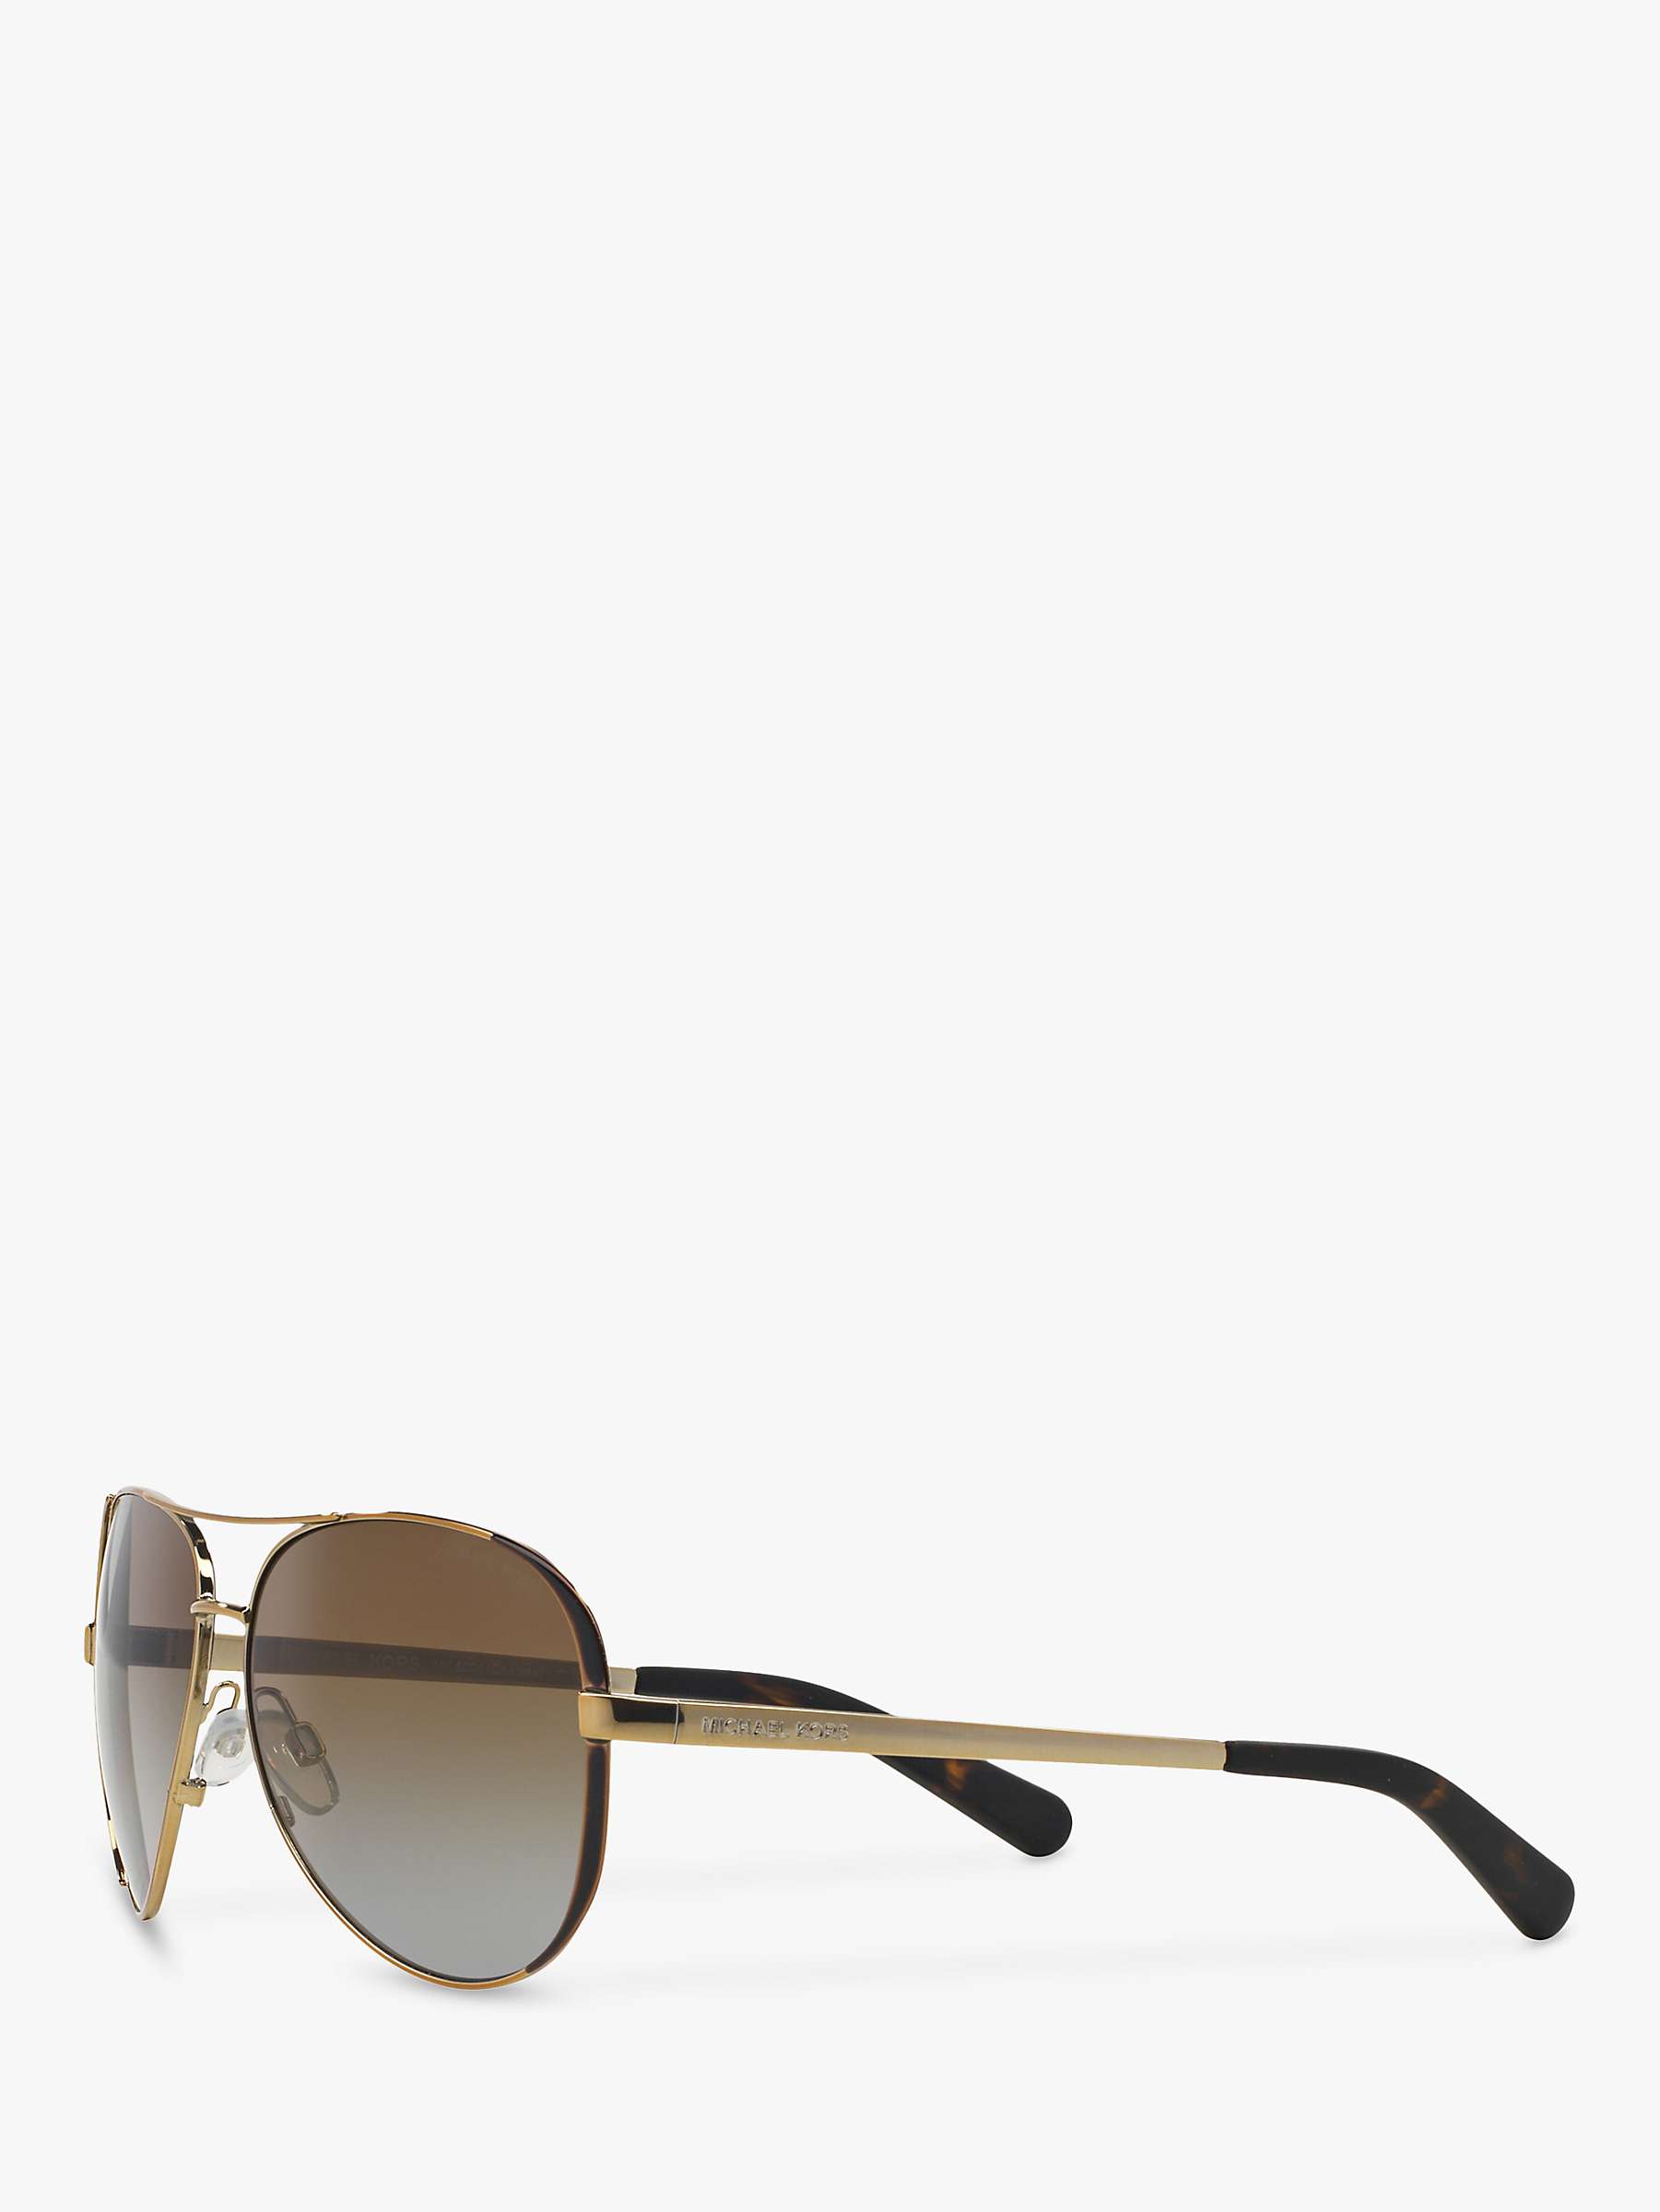 Buy Michael Kors MK5004 Chelsea Polarised Aviator Sunglasses, Brown Online at johnlewis.com